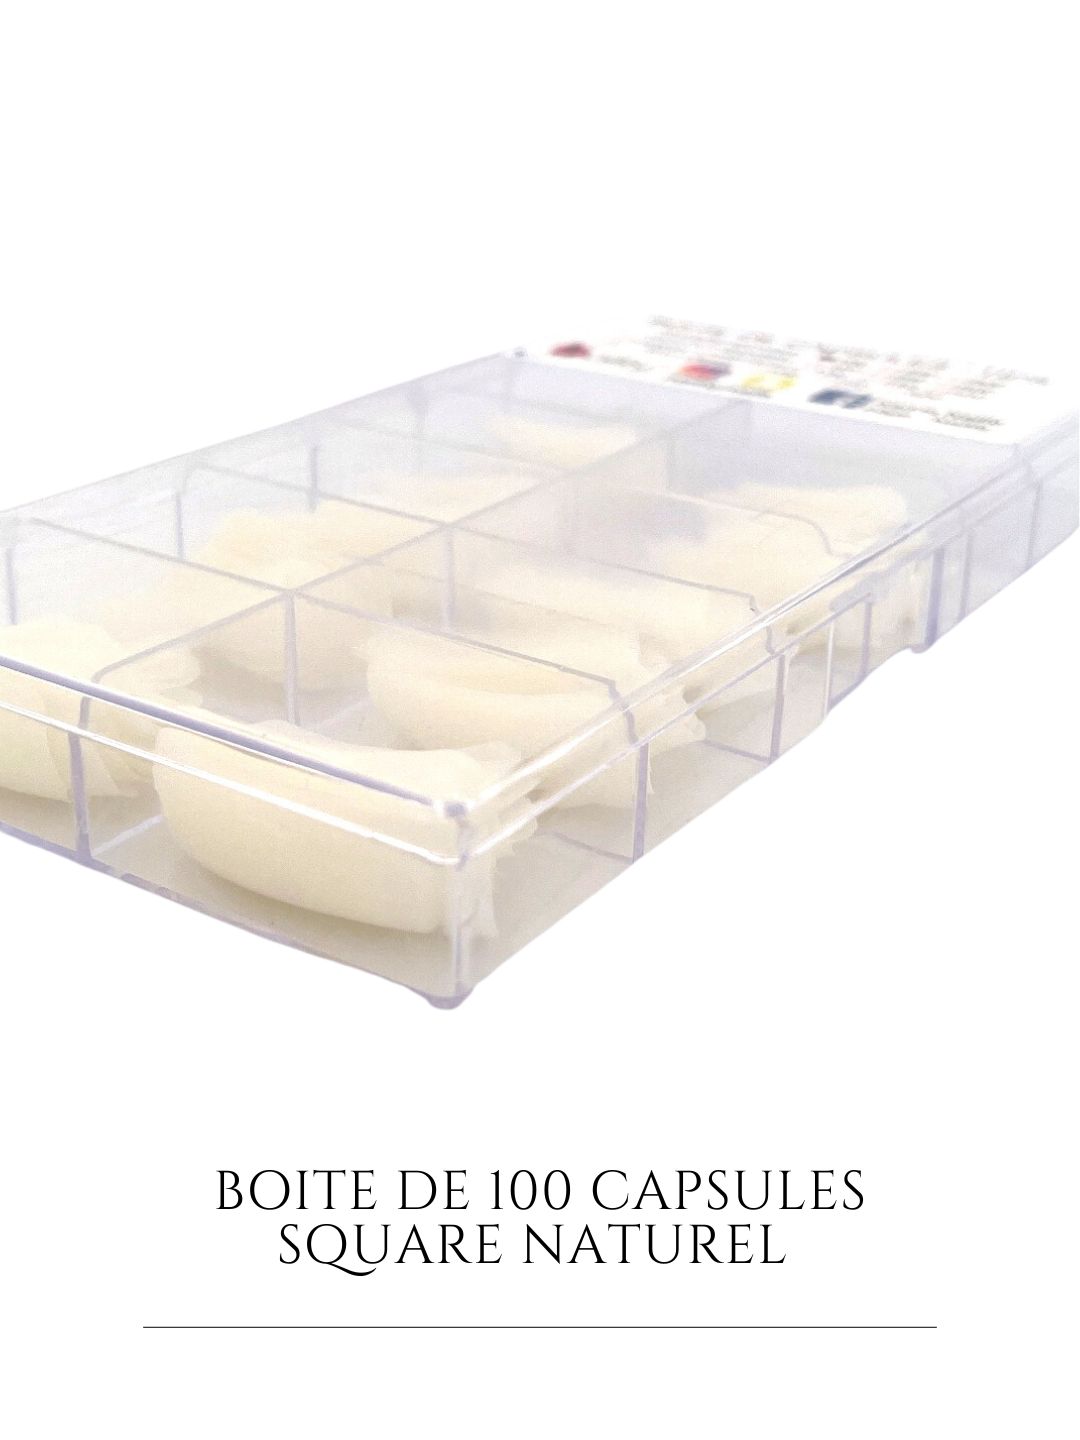 Boite de 100 capsules tips square naturel